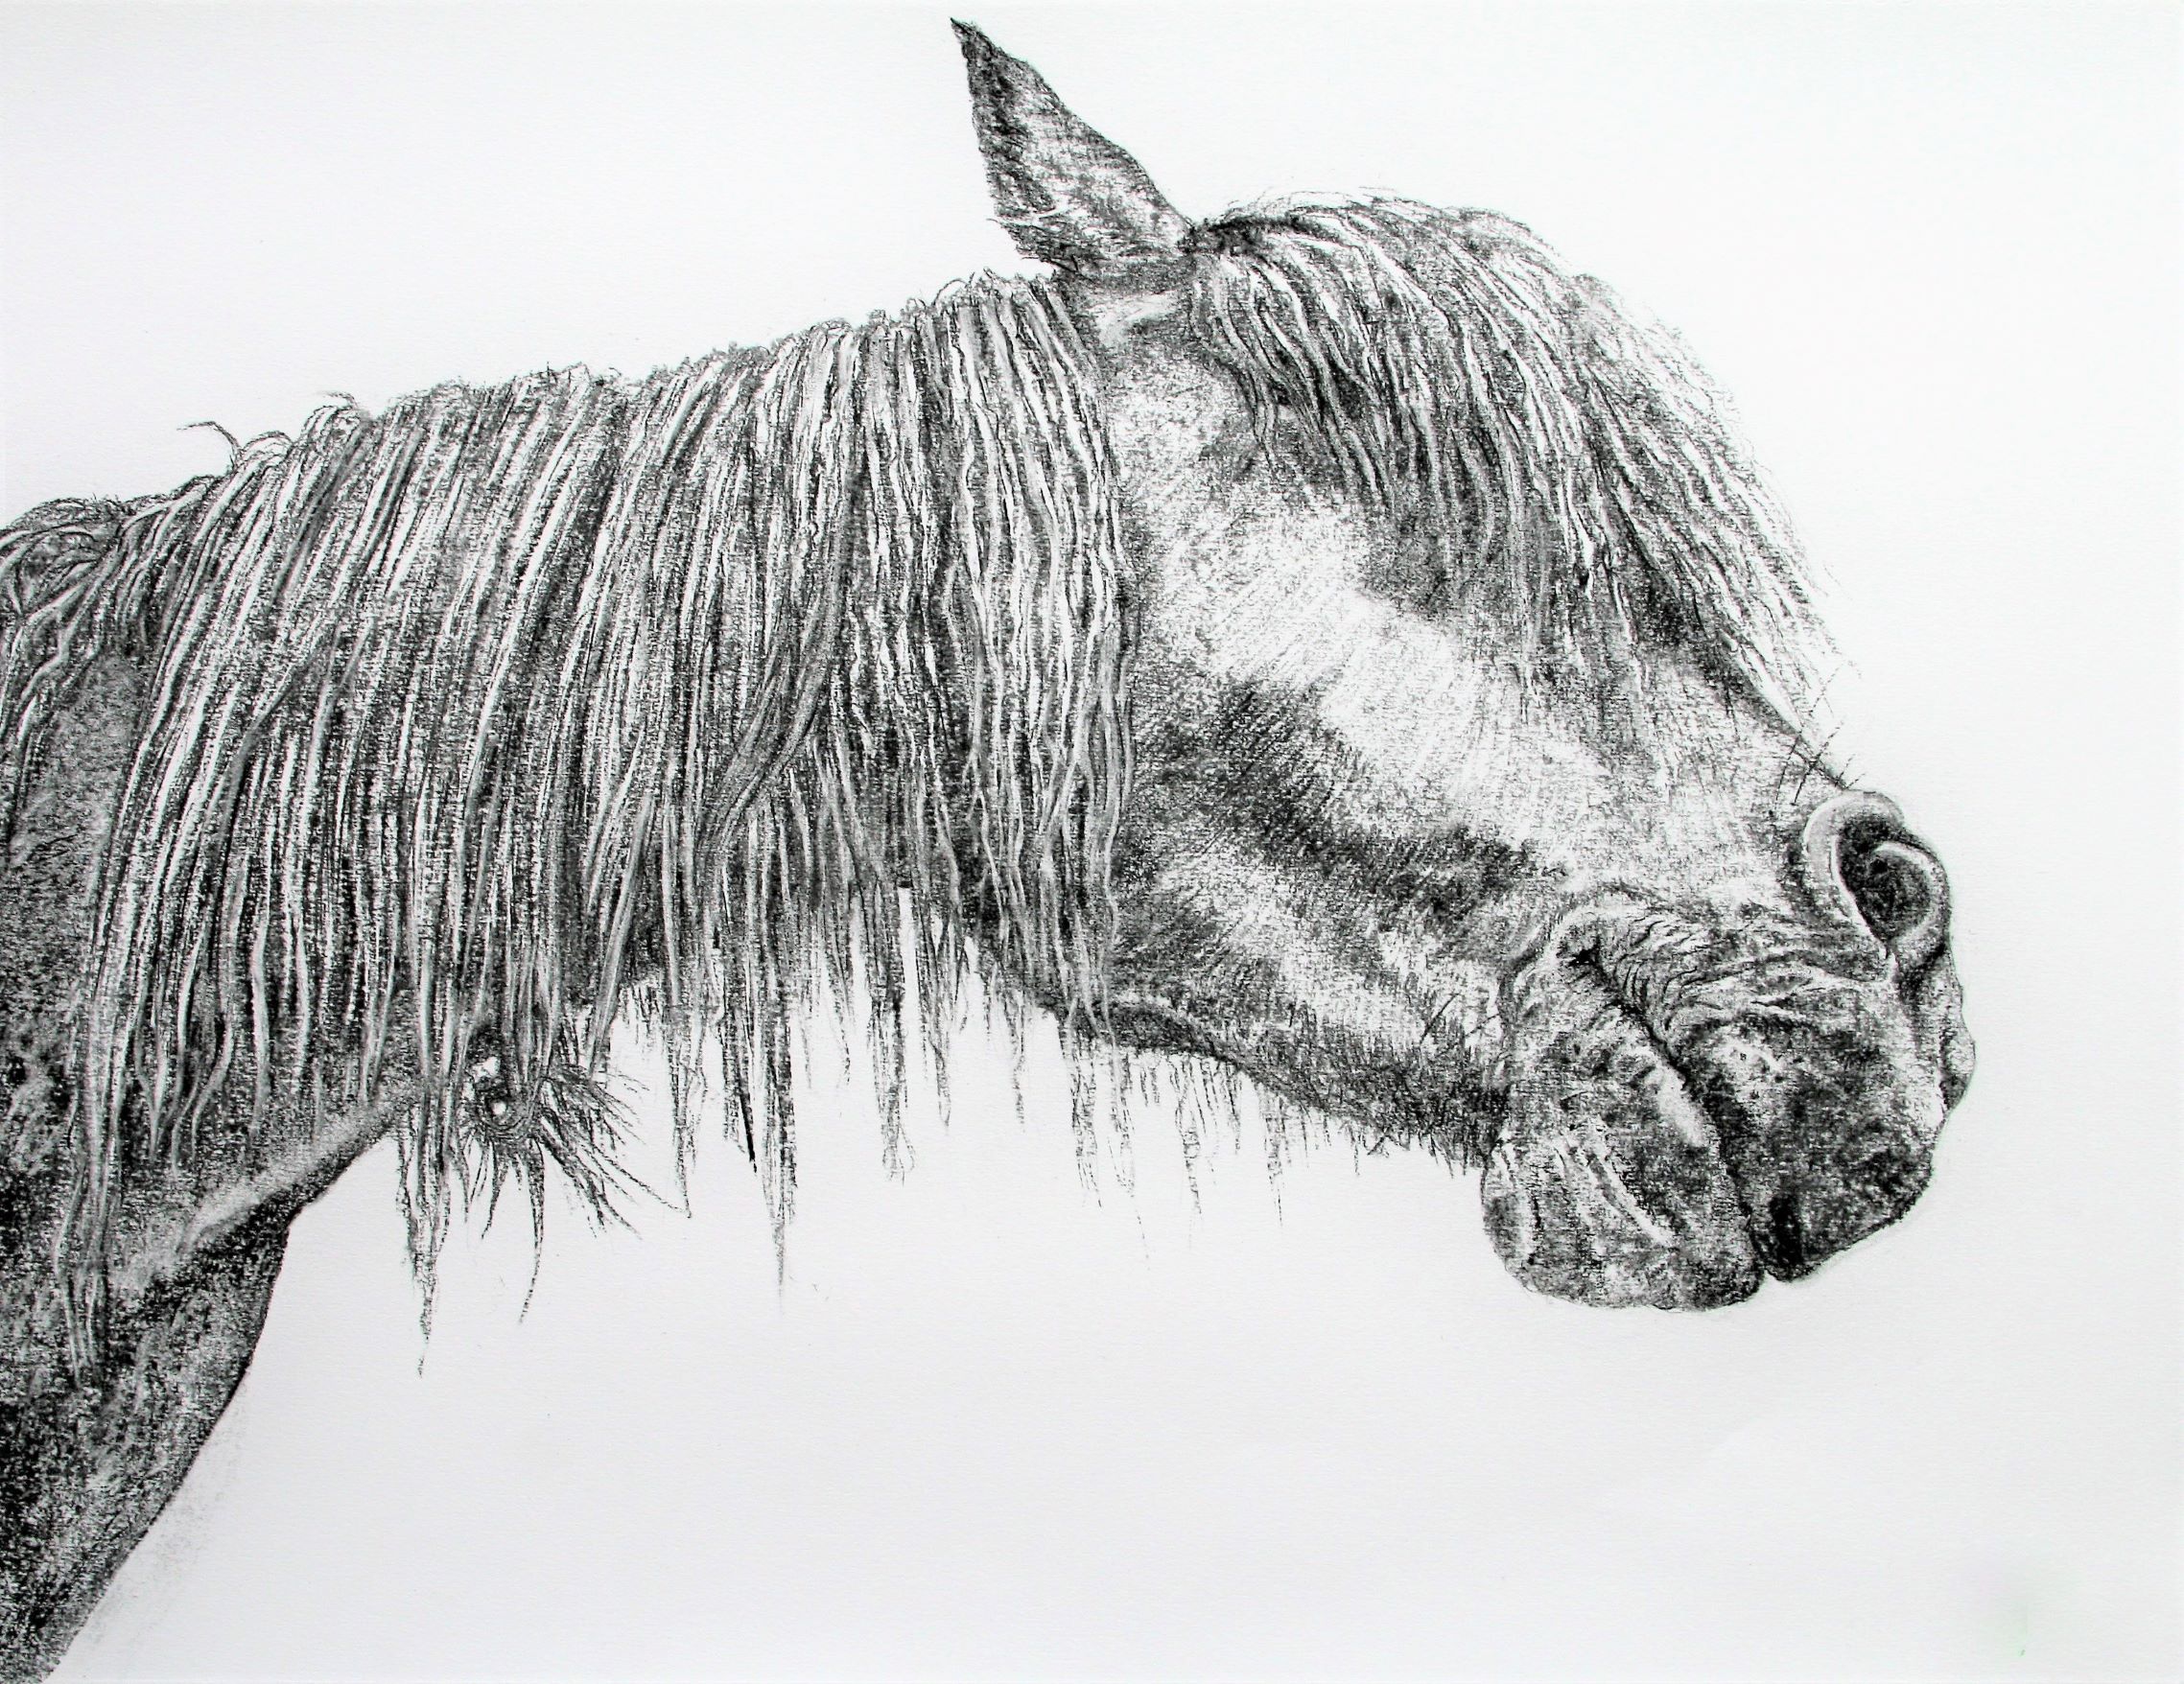 Dartmoor Pony - Wildwood Arts Dartmoor